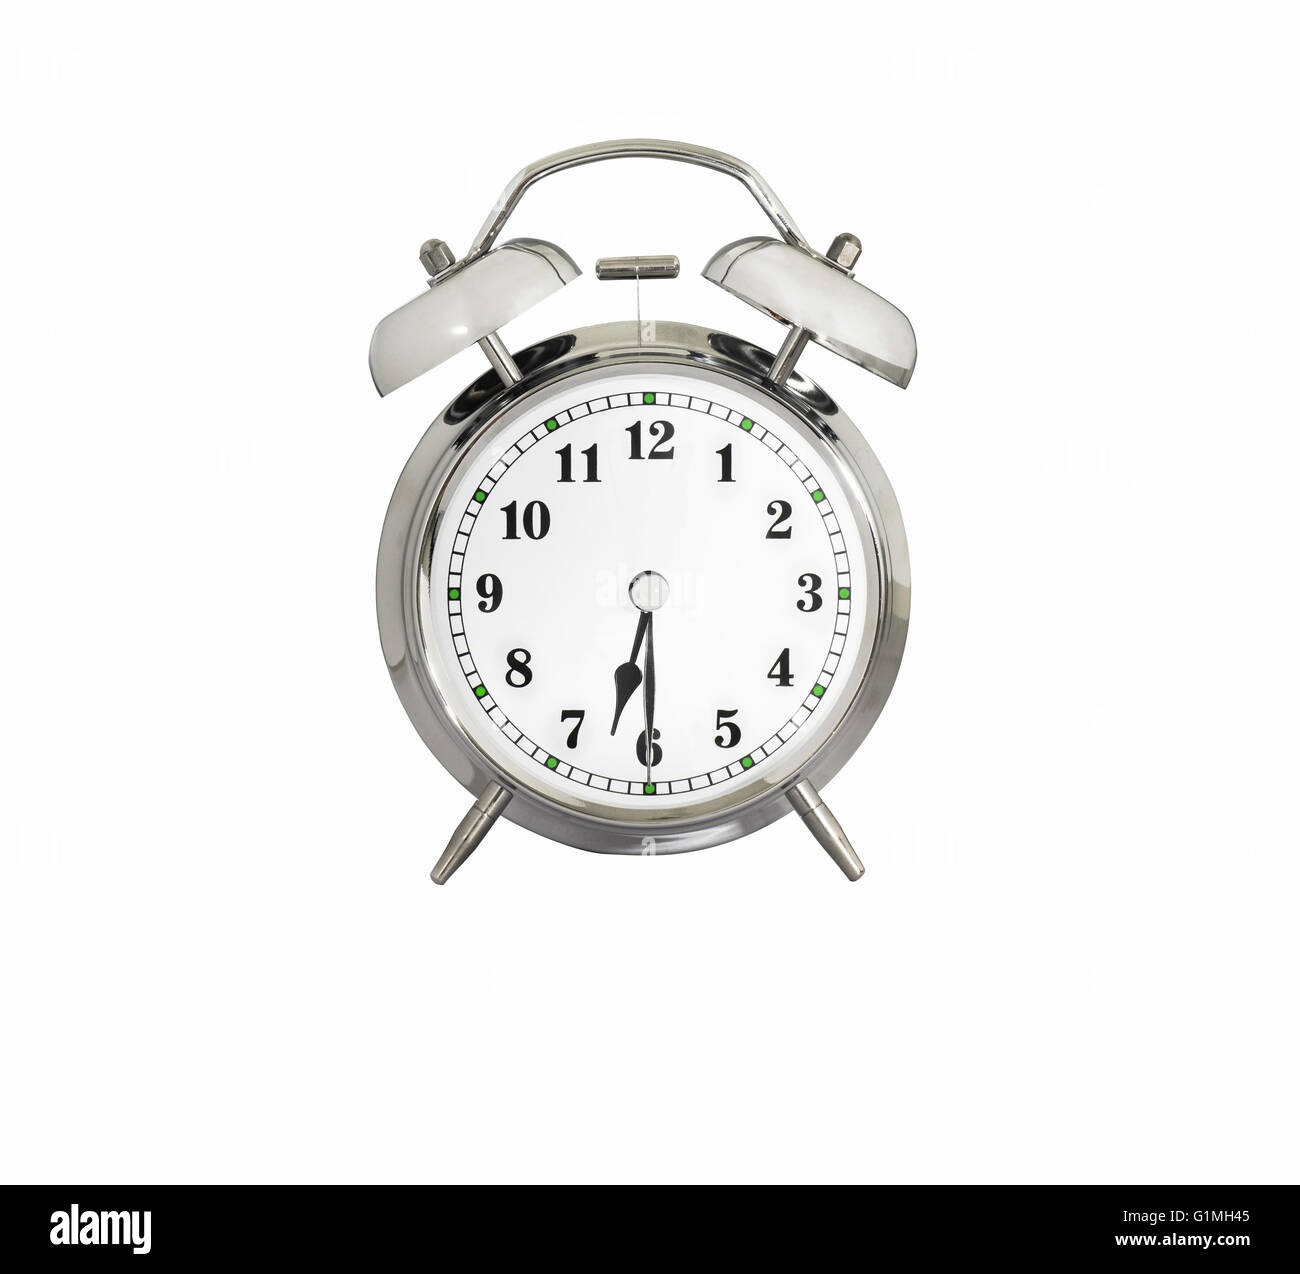 Réveil traditionnel montrant 6:30 Photo Stock - Alamy